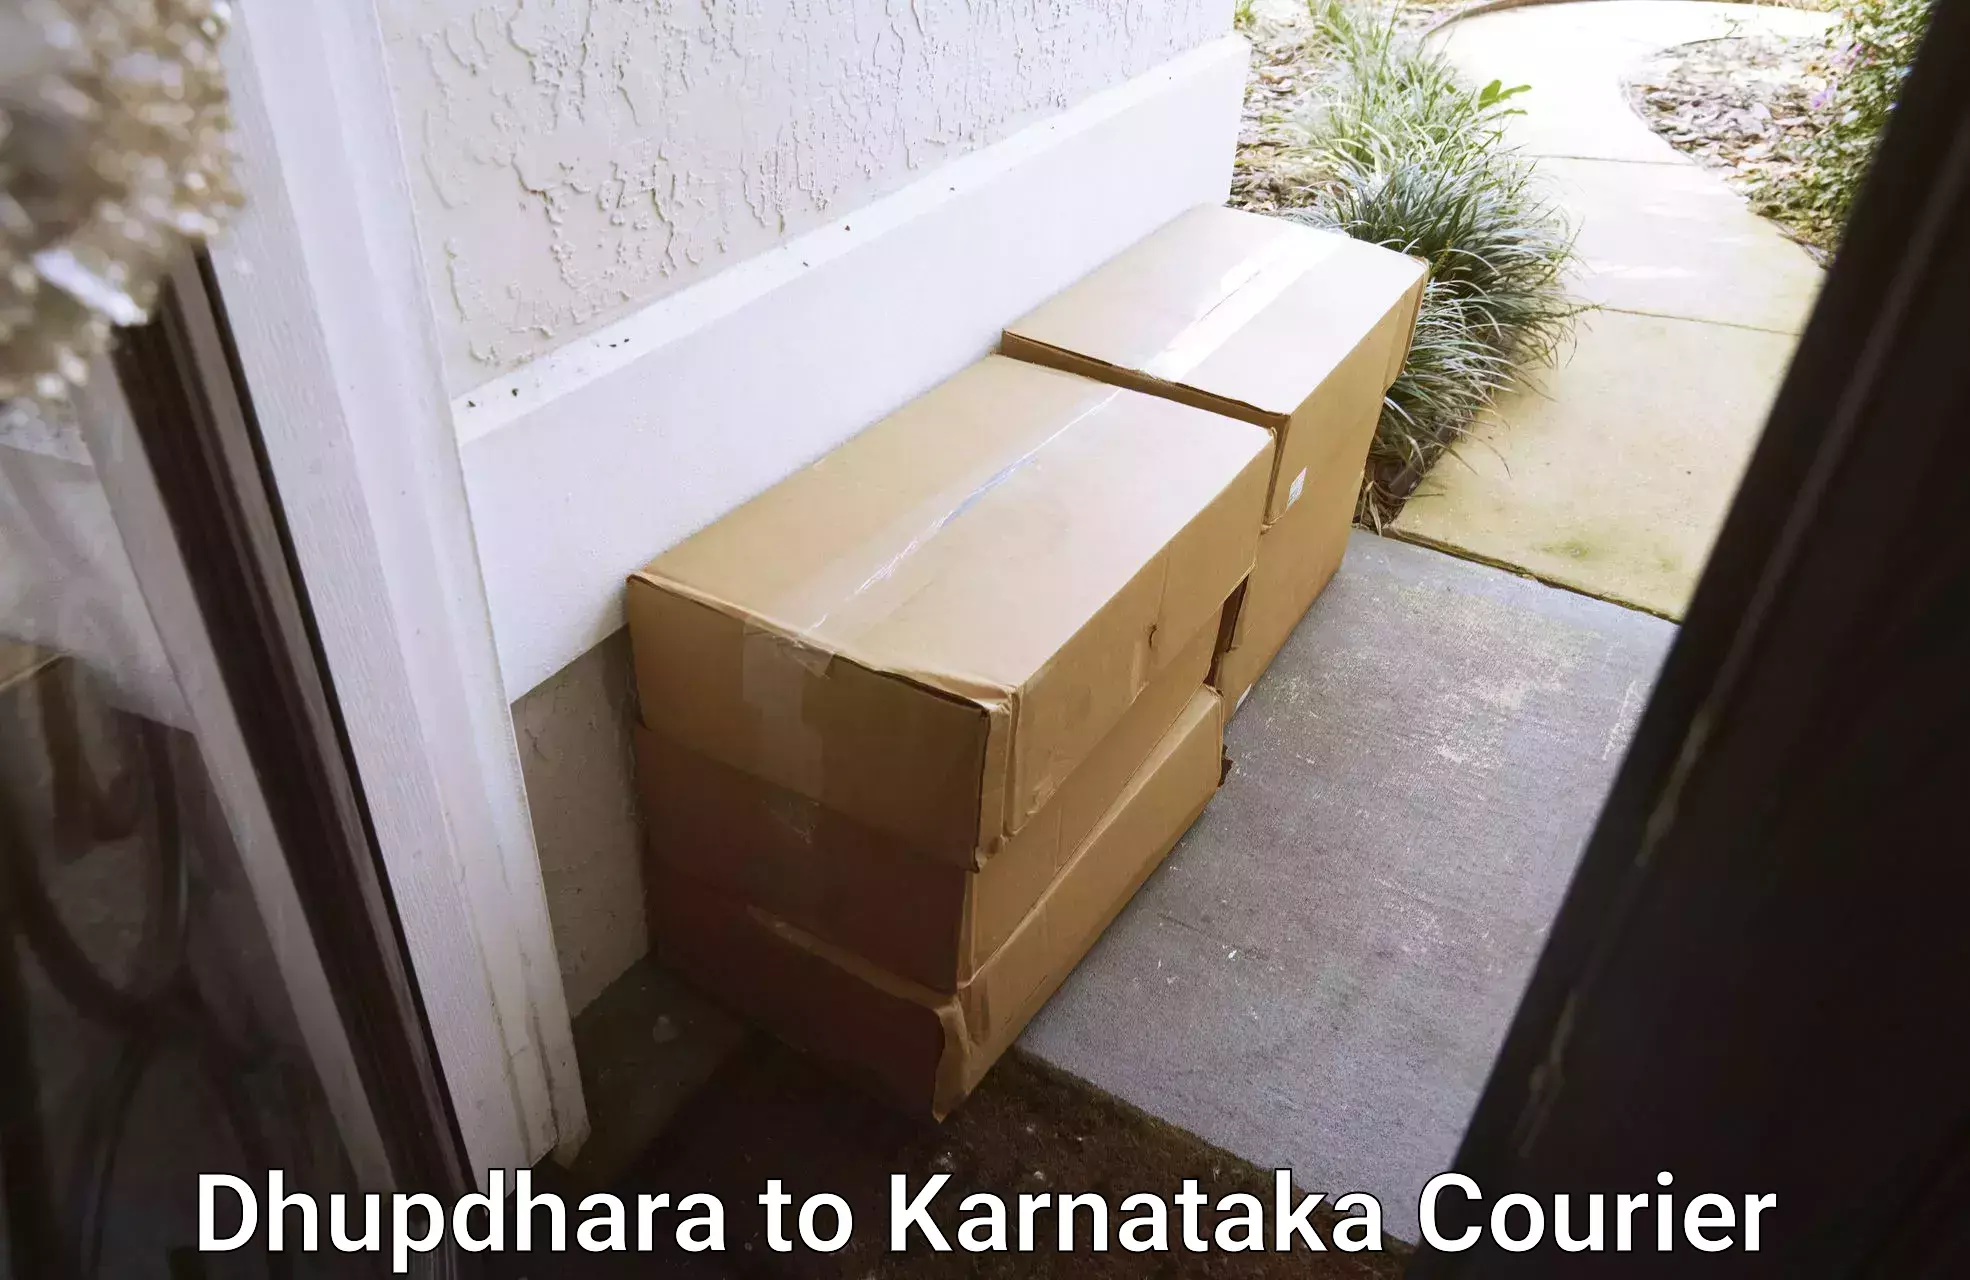 Efficient parcel transport Dhupdhara to Karnataka